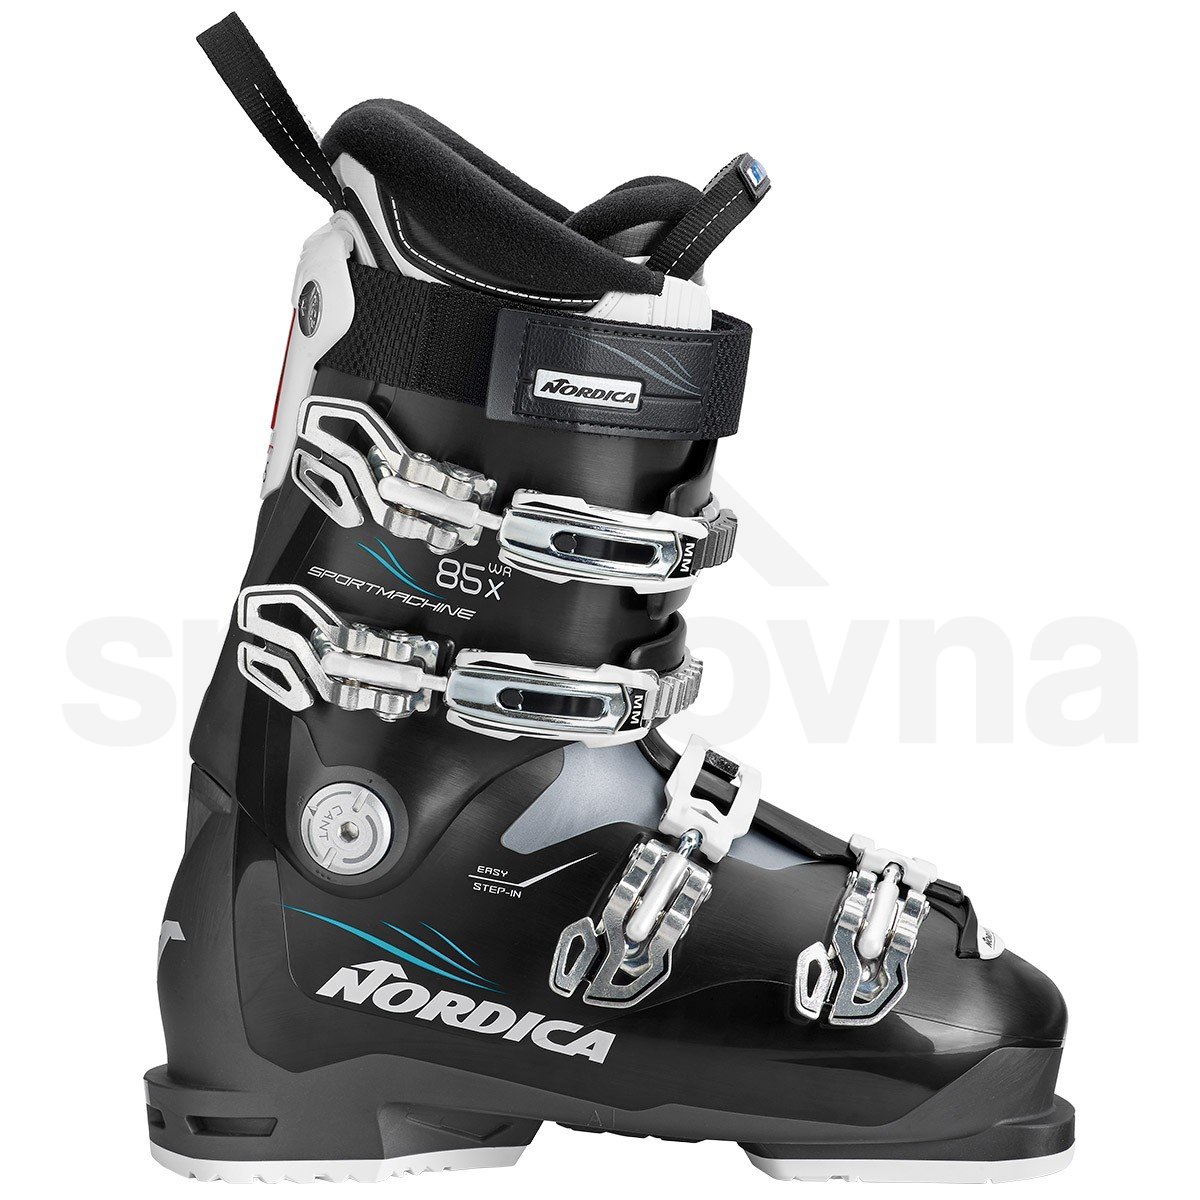 ski-boots-nordica-sportmachine-85-x-wr